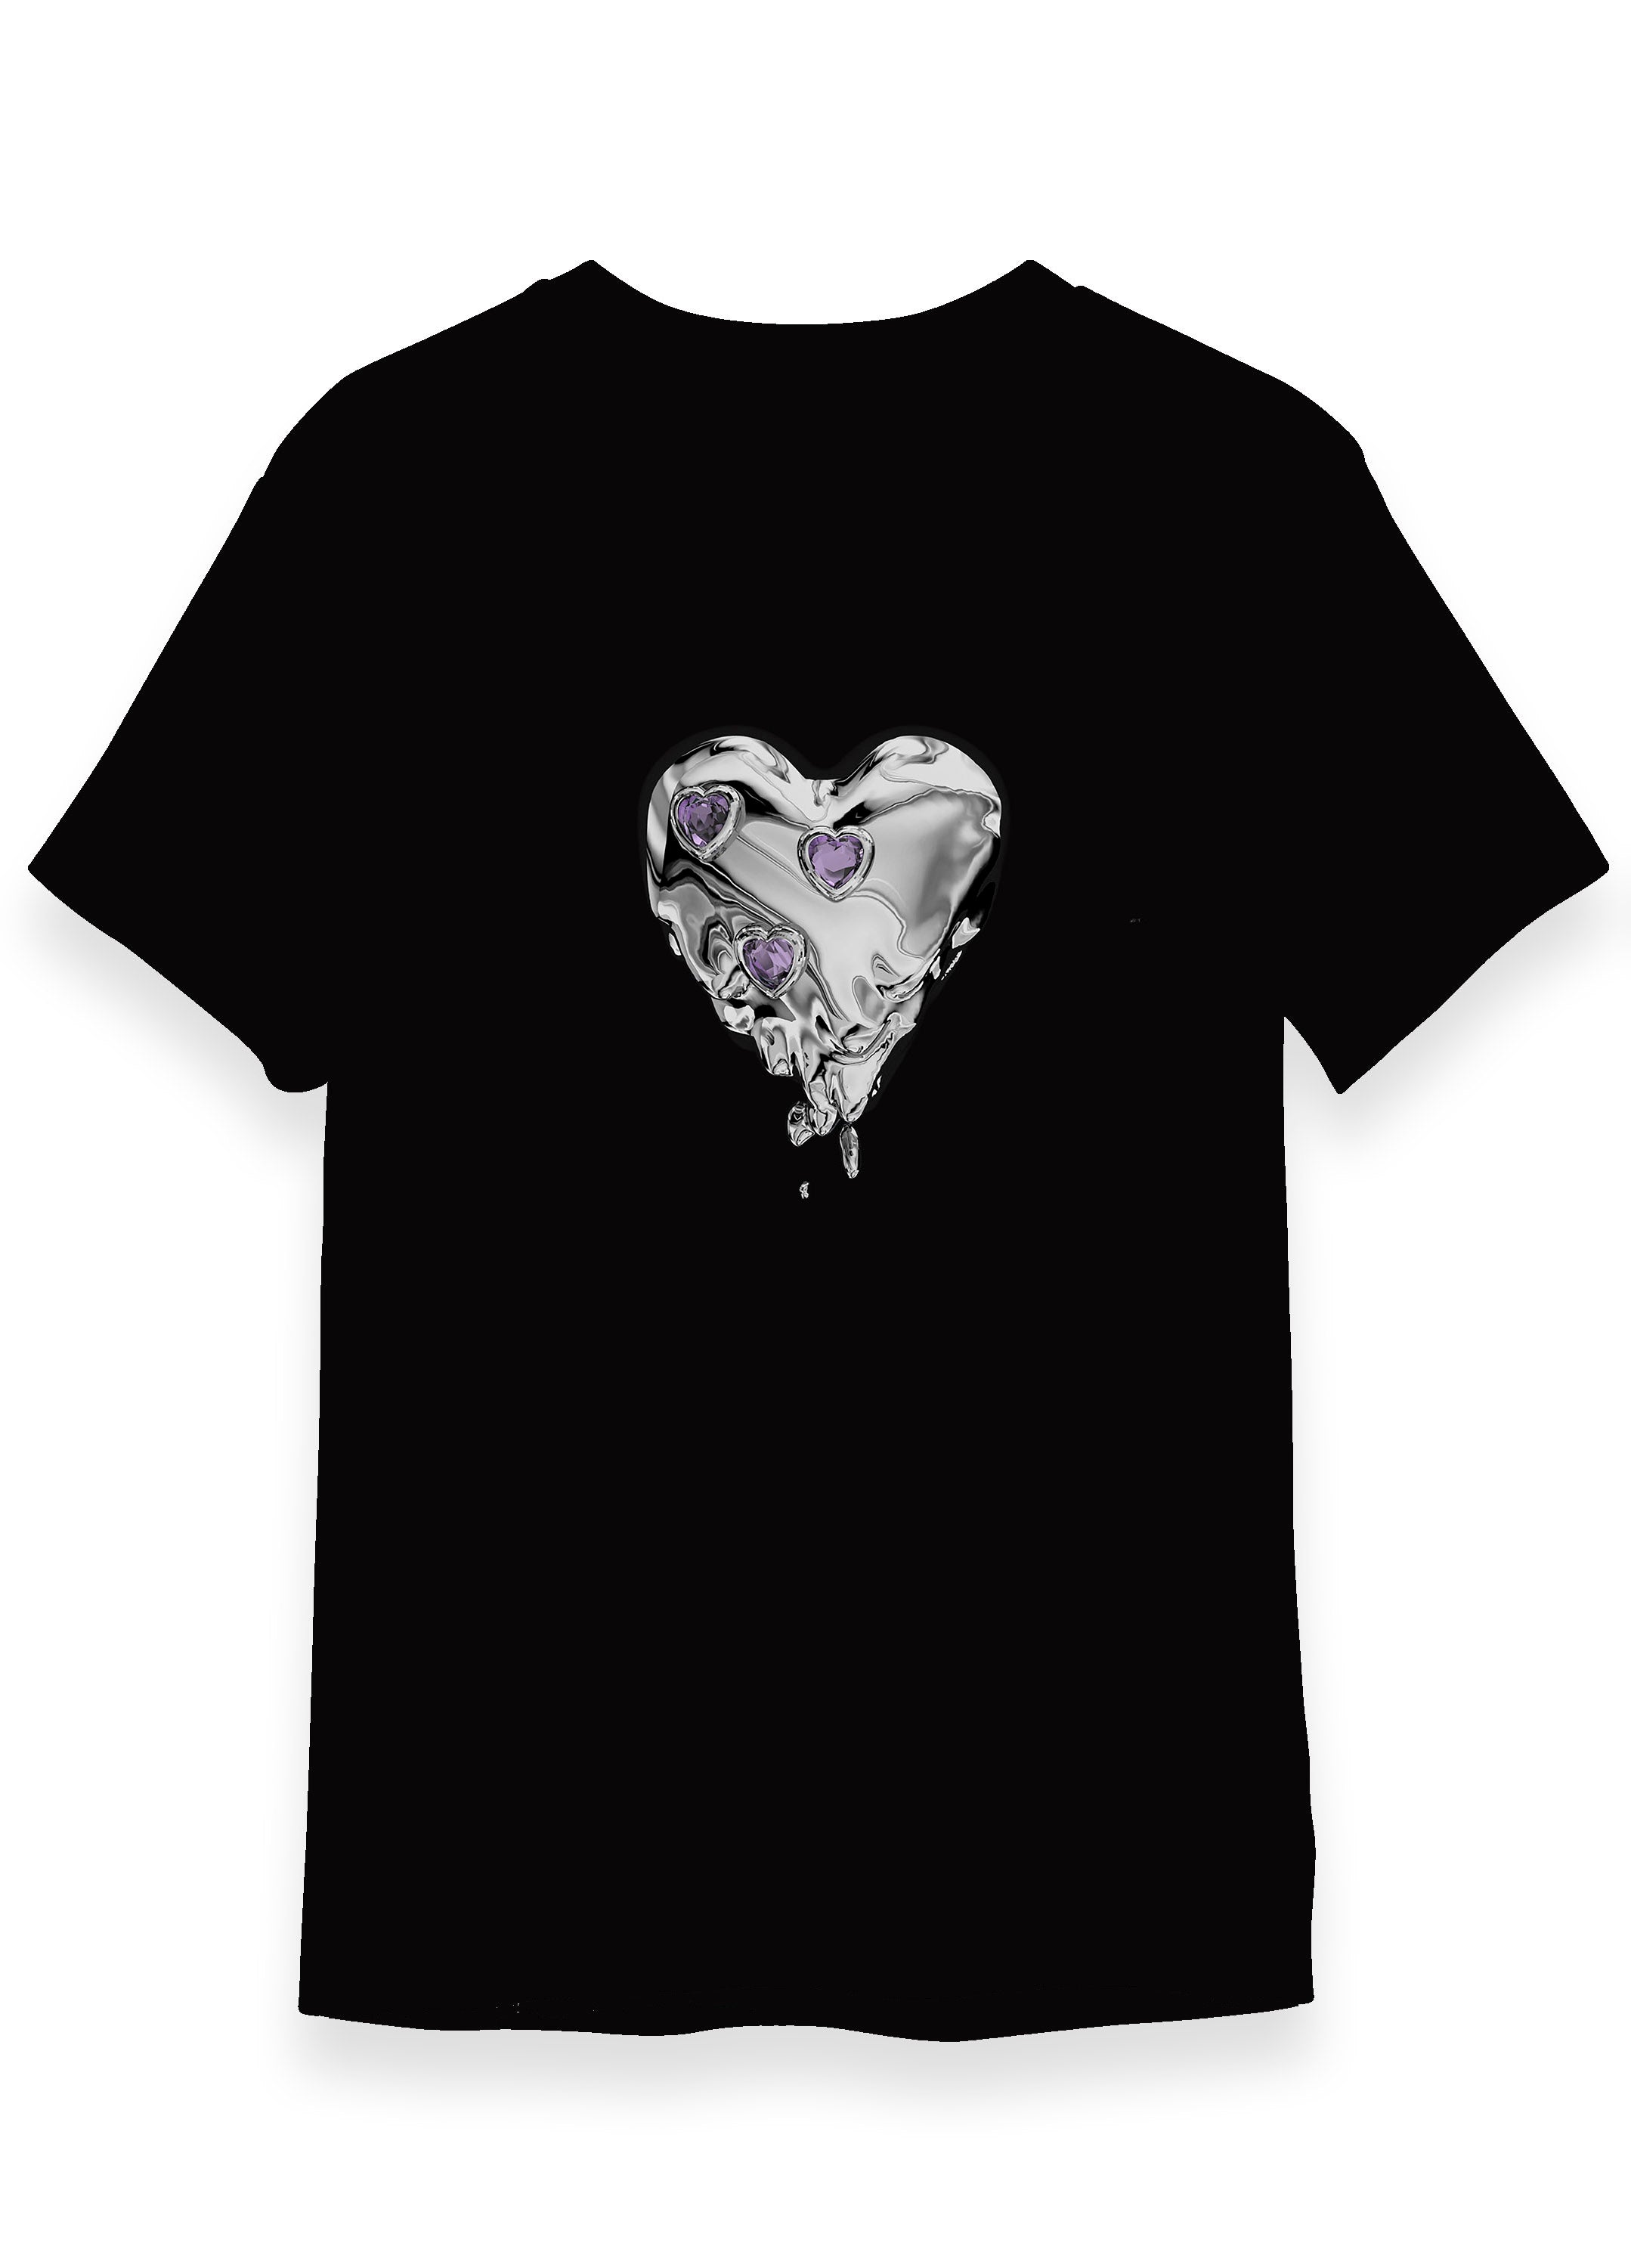 Melting Heart T-Shirt